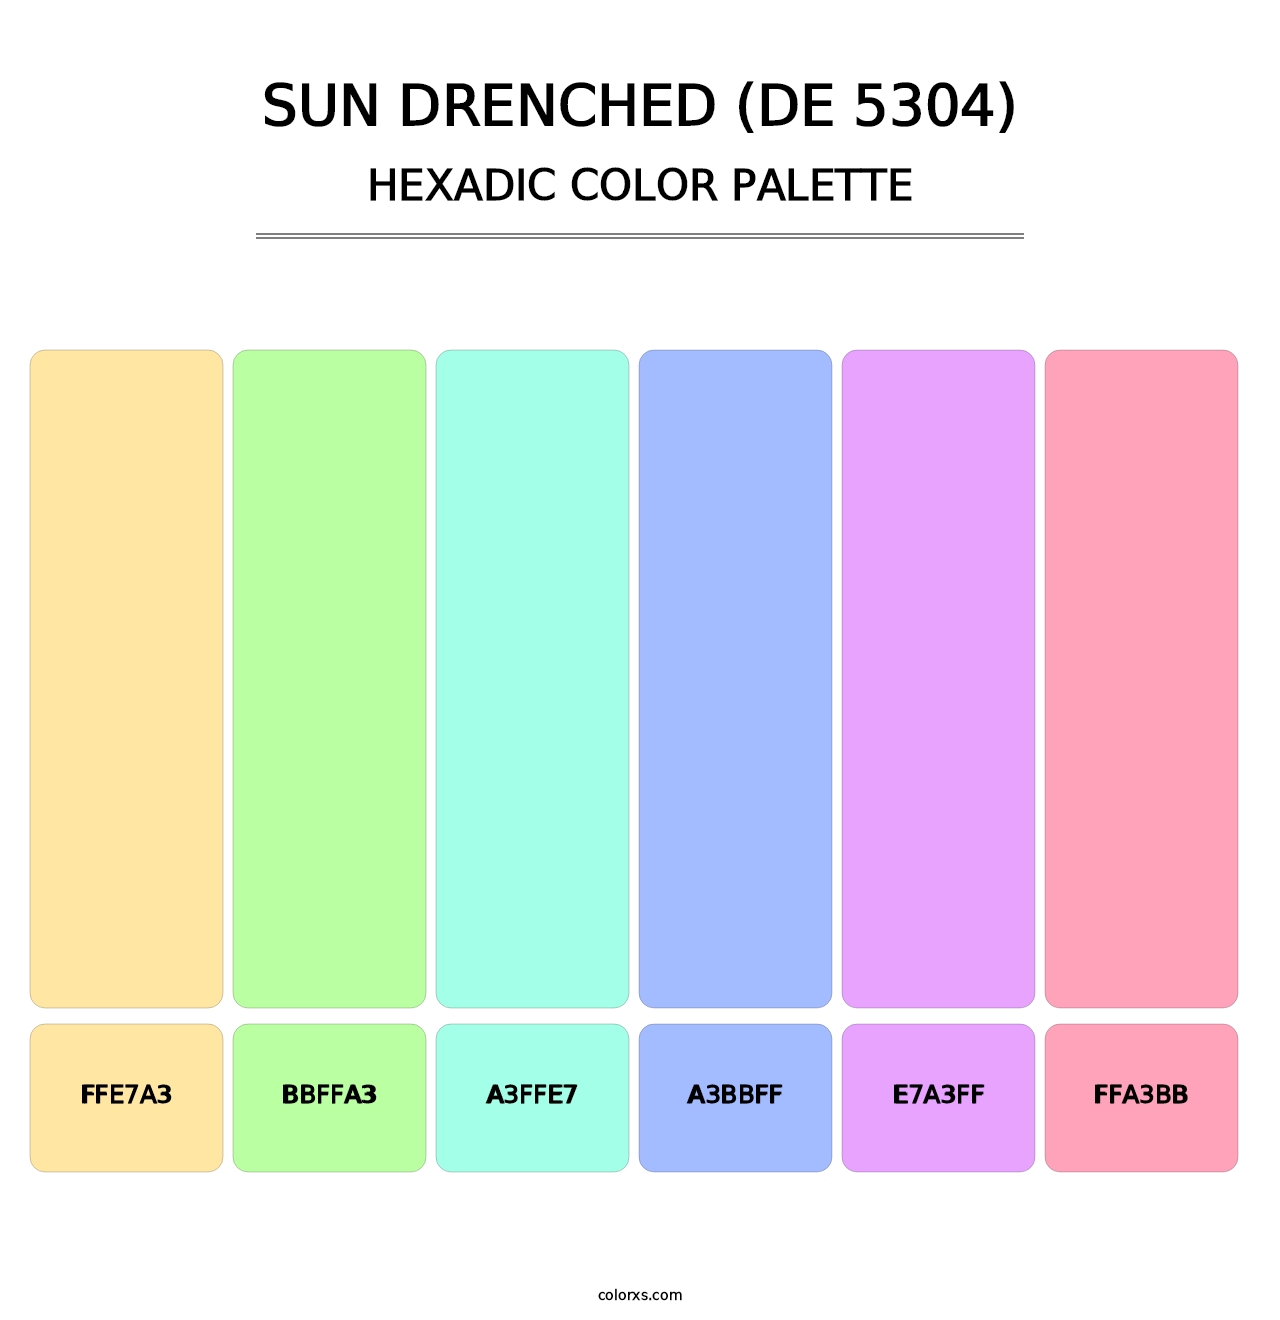 Sun Drenched (DE 5304) - Hexadic Color Palette